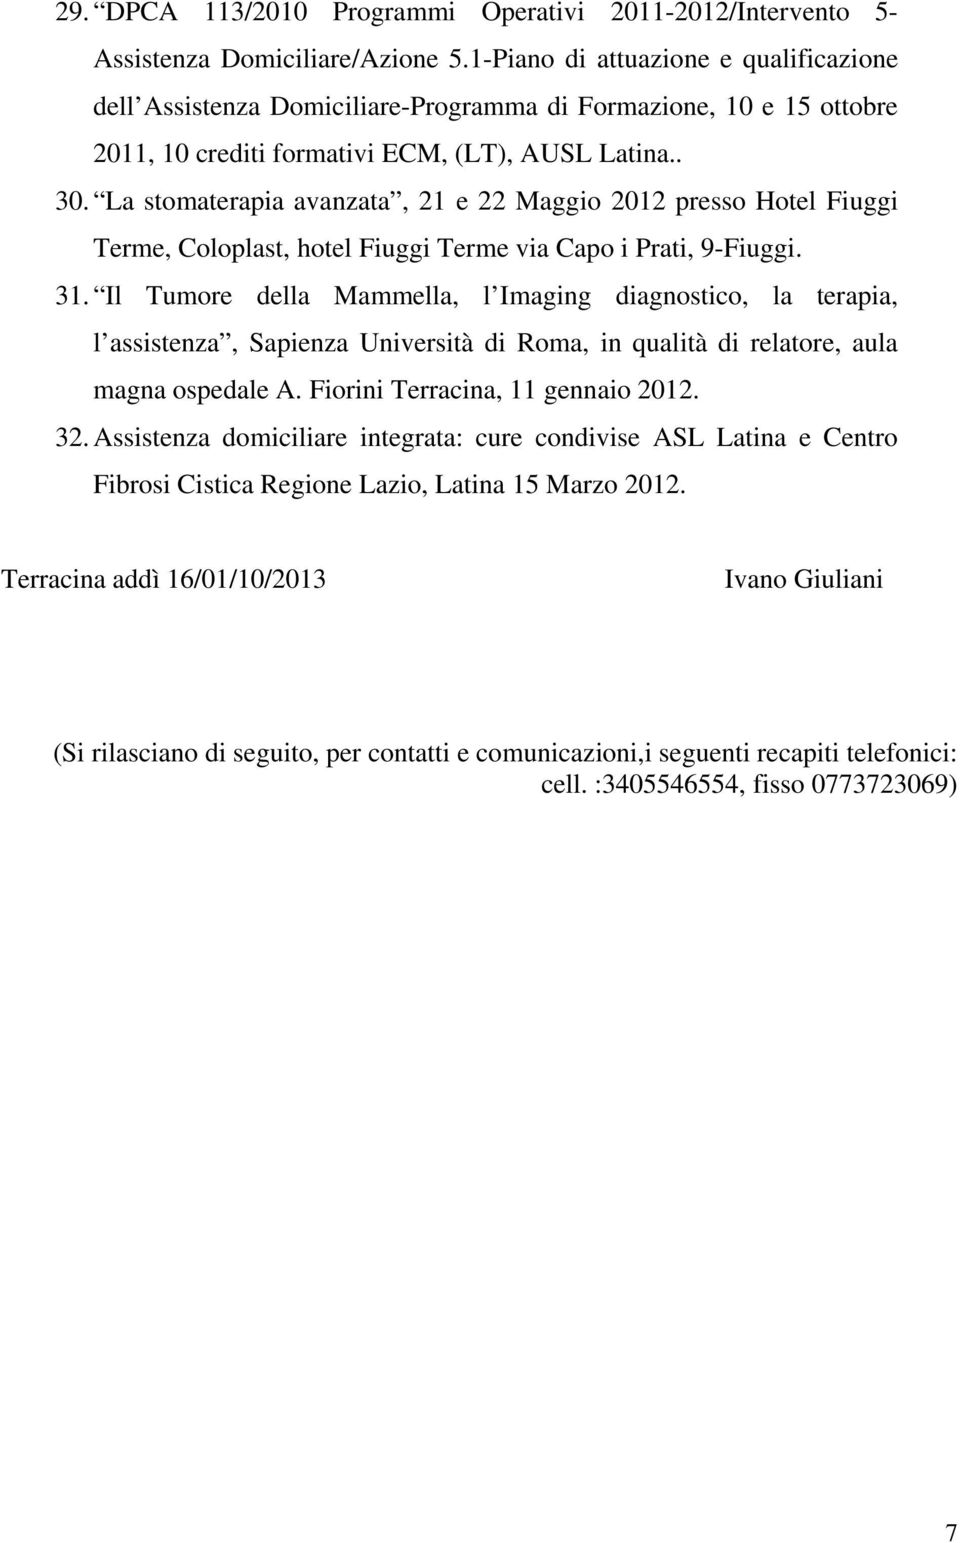 La stomaterapia avanzata, 21 e 22 Maggio 2012 presso Hotel Fiuggi Terme, Coloplast, hotel Fiuggi Terme via Capo i Prati, 9-Fiuggi. 31.